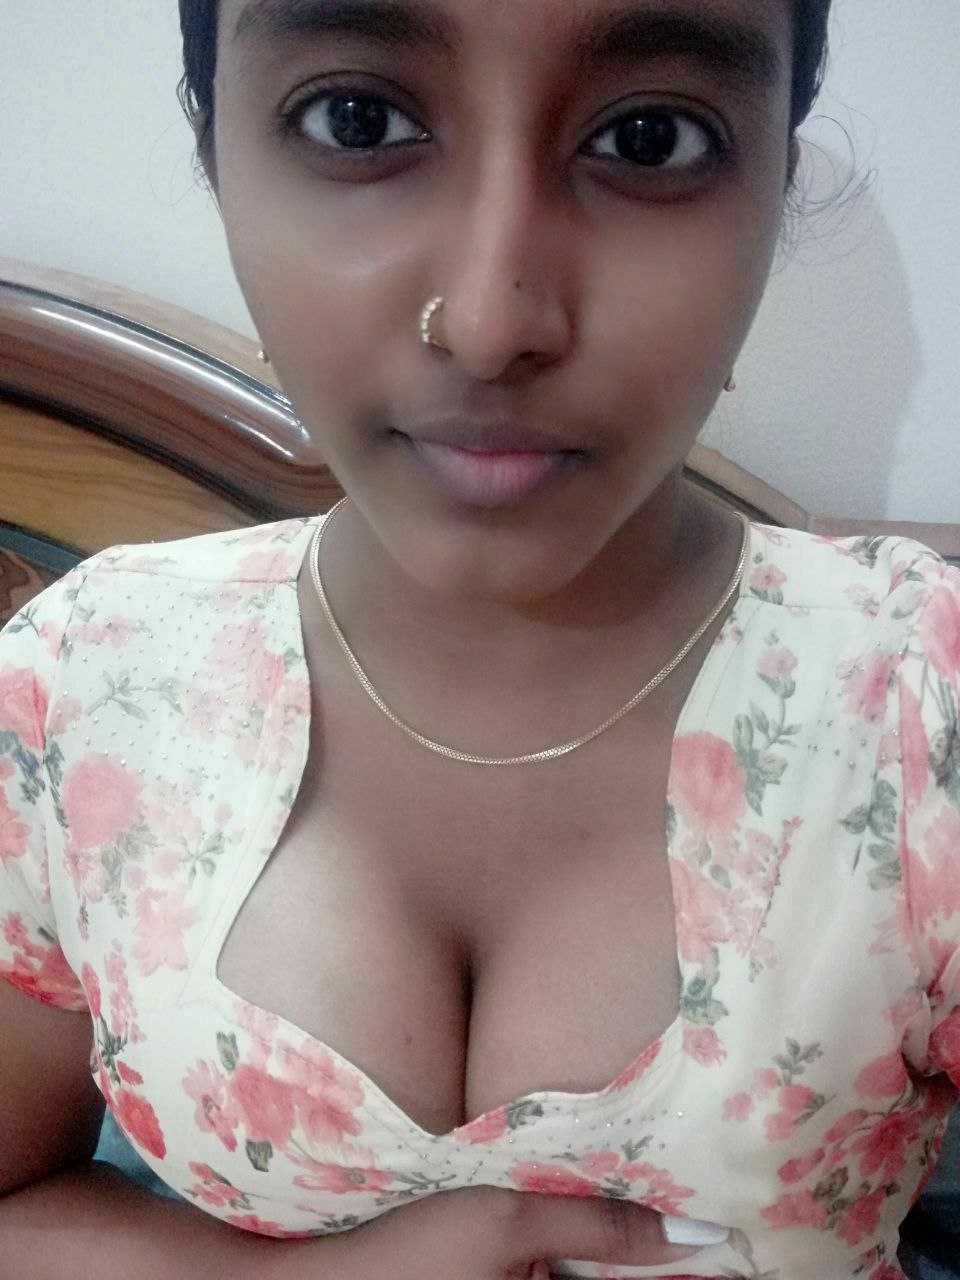 Kerala teen girls sex